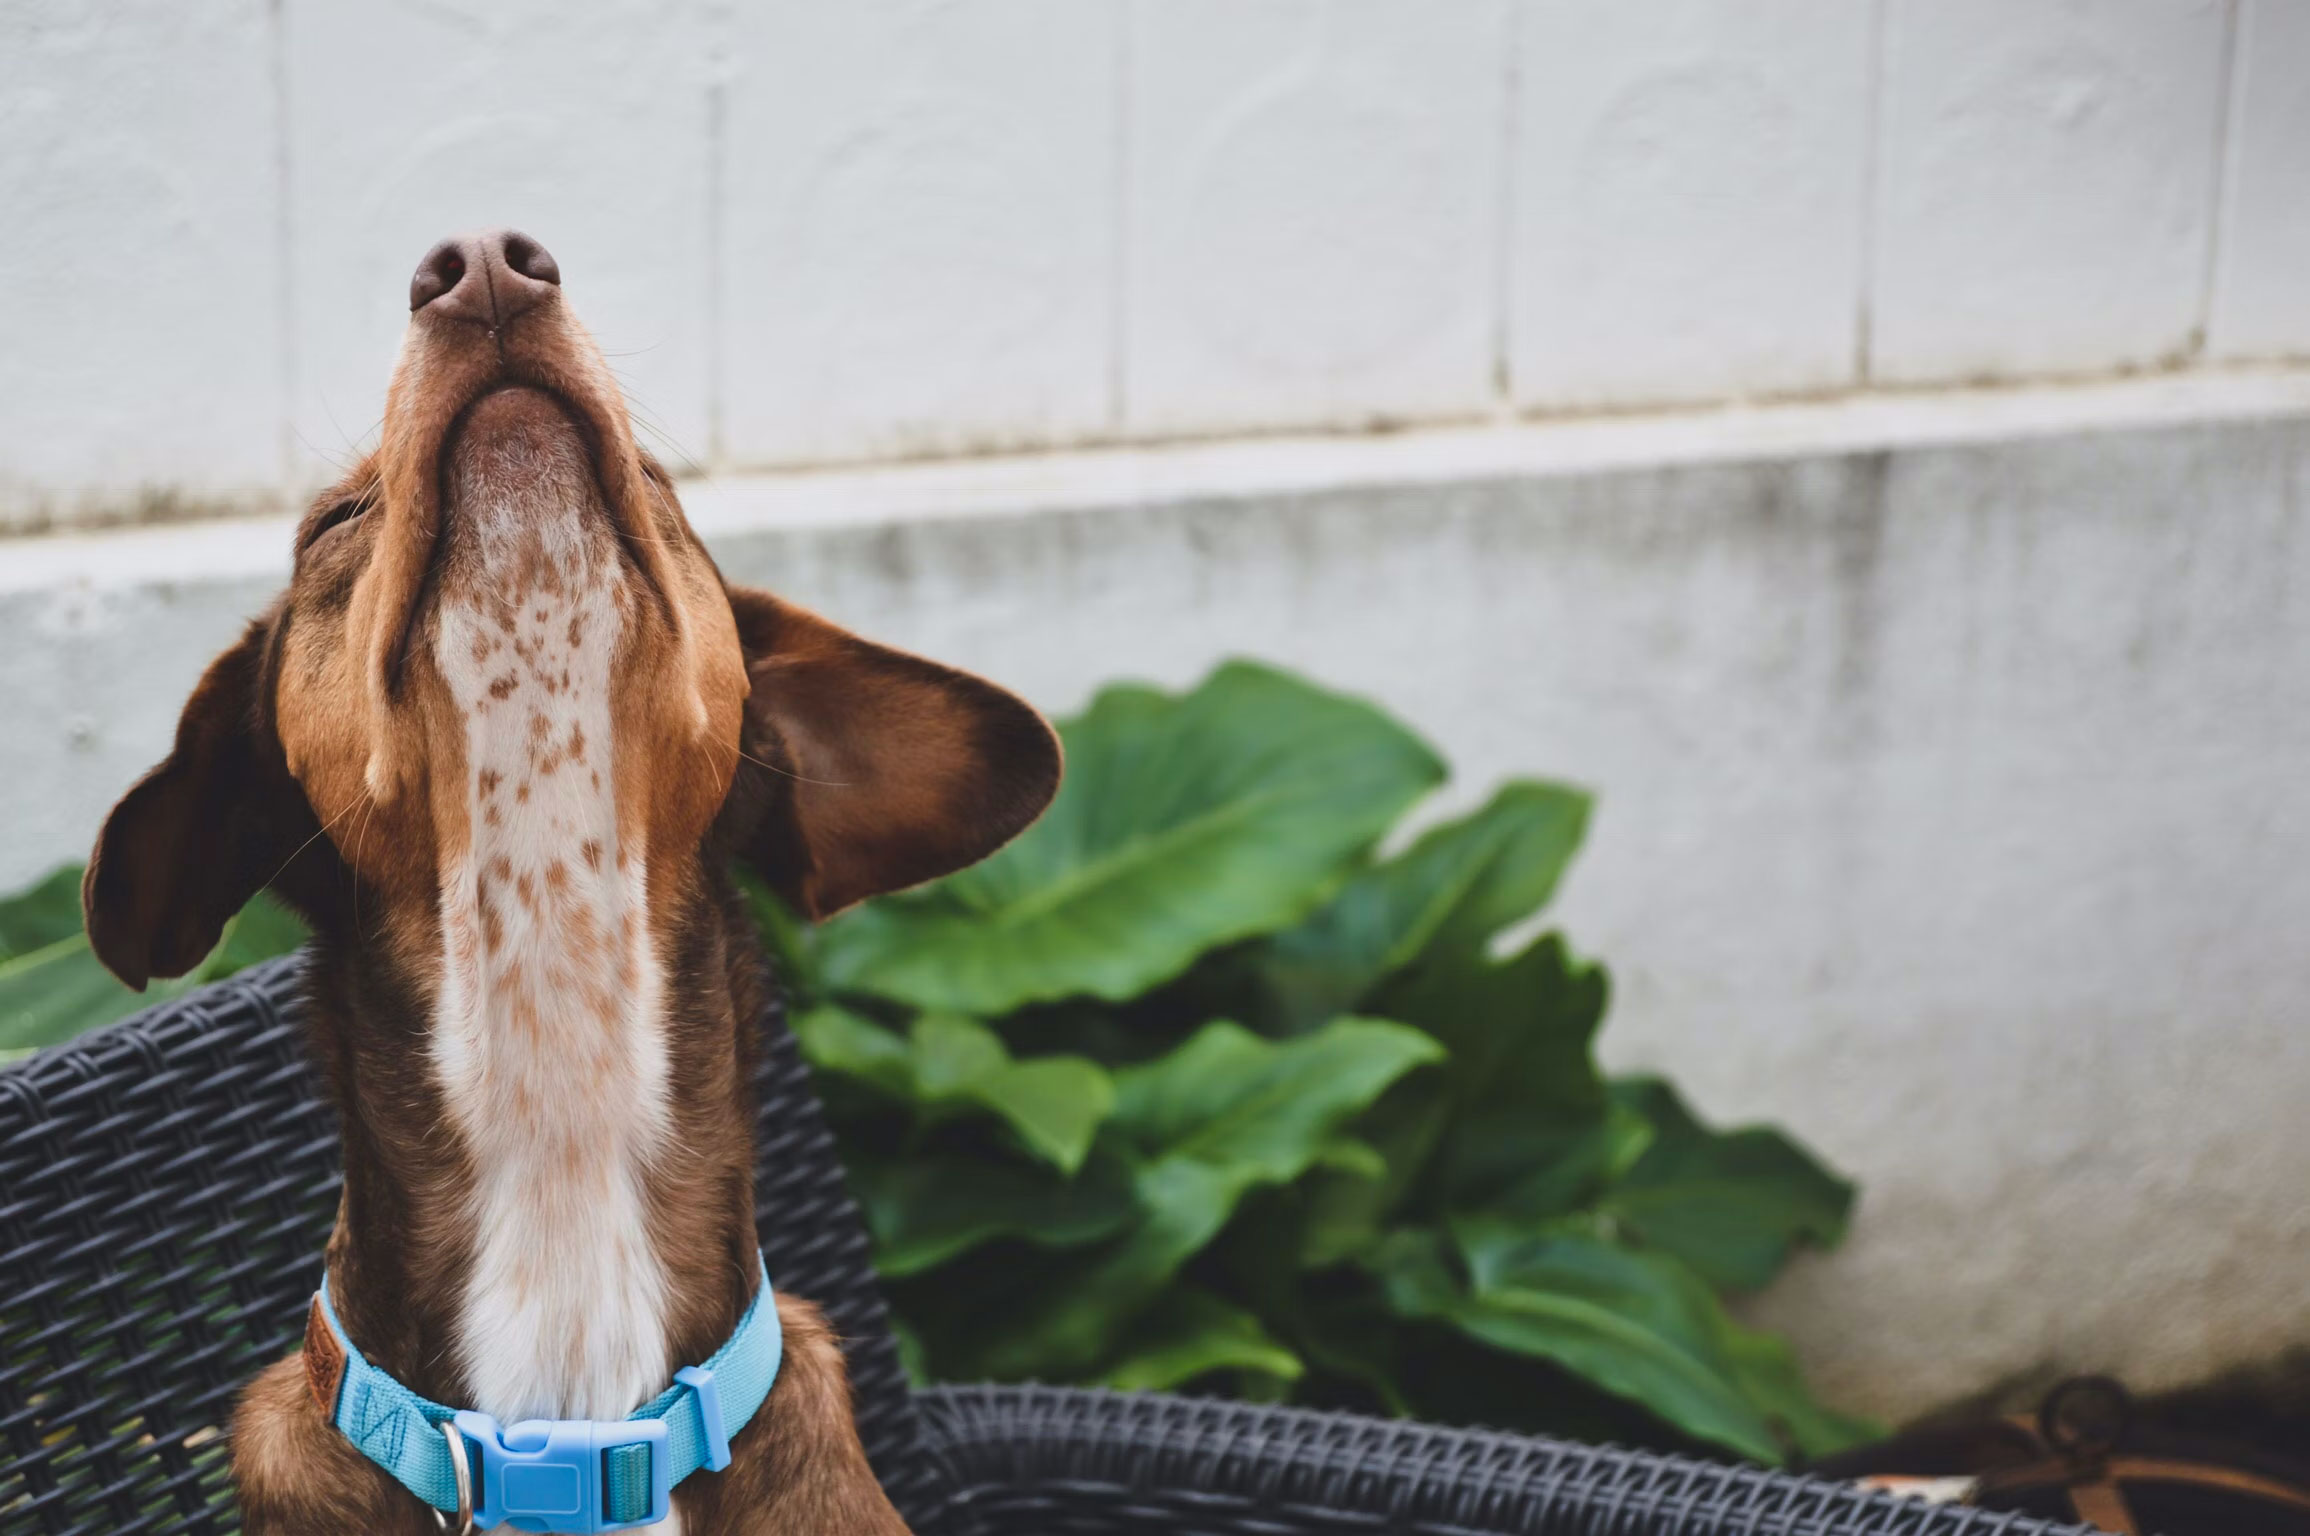 Ontdek waarom honden snuffelen en hoe dit instinctieve gedrag hen helpt de wereld te verkennen, te communiceren en stress te verminderen. Lees onze blog voor inzichten in de wondere wereld van de hondenneus en leer hoe je jouw viervoetige vriend kunt ondersteunen in zijn natuurlijke behoefte aan snuffelen.